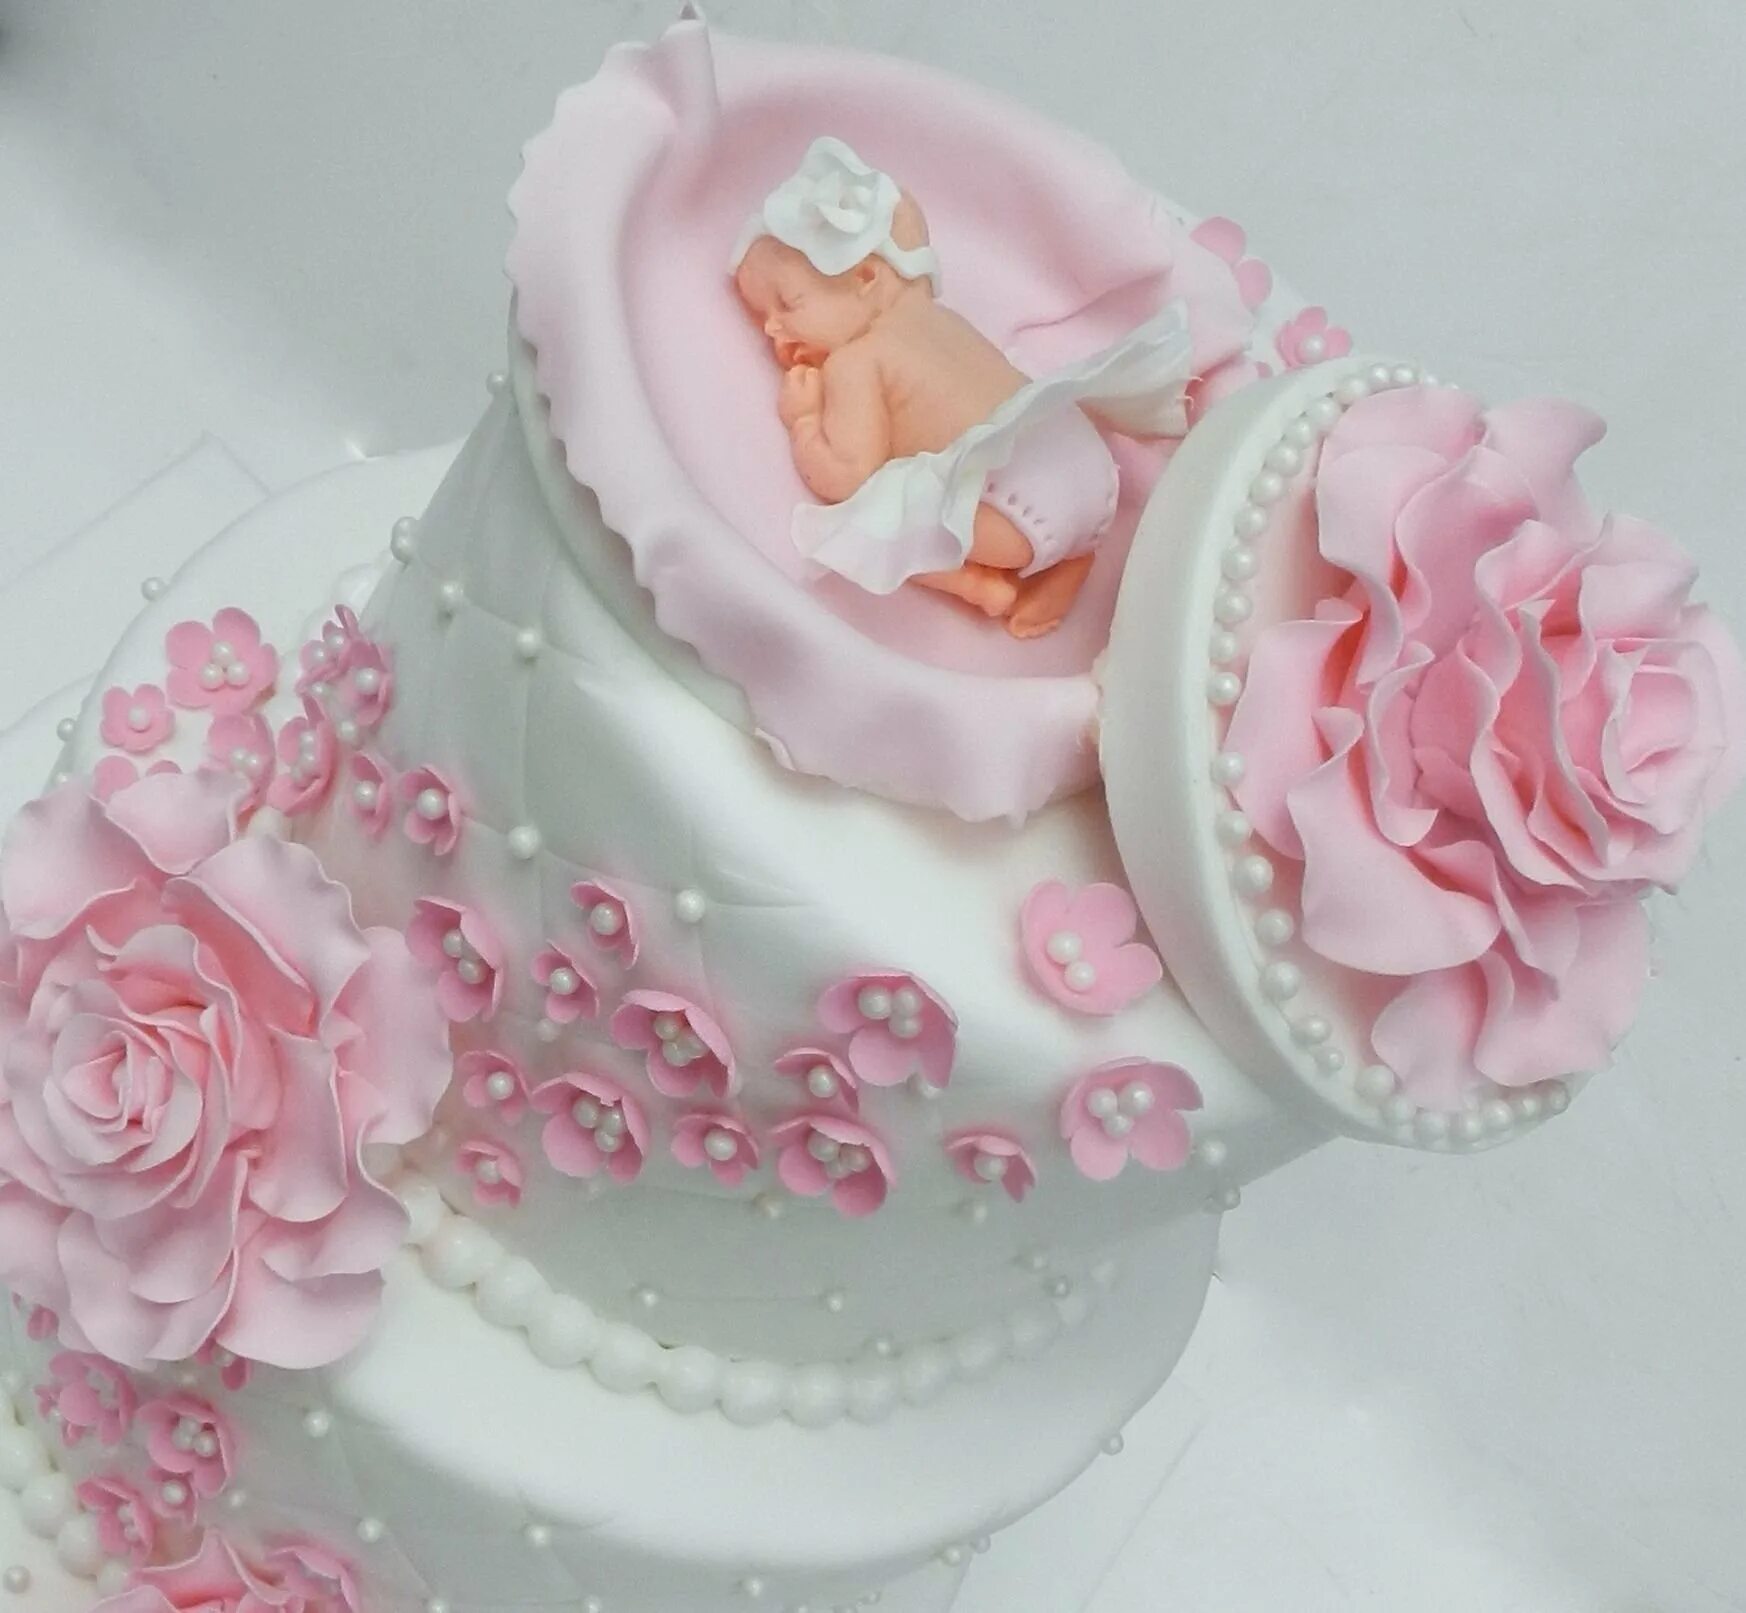 Красивый торт на рождения девочки. Торт для новорожденных. Торт на выписку для девочки. Тортик для новорожденной девочки. Торт для новорожденных девочек.